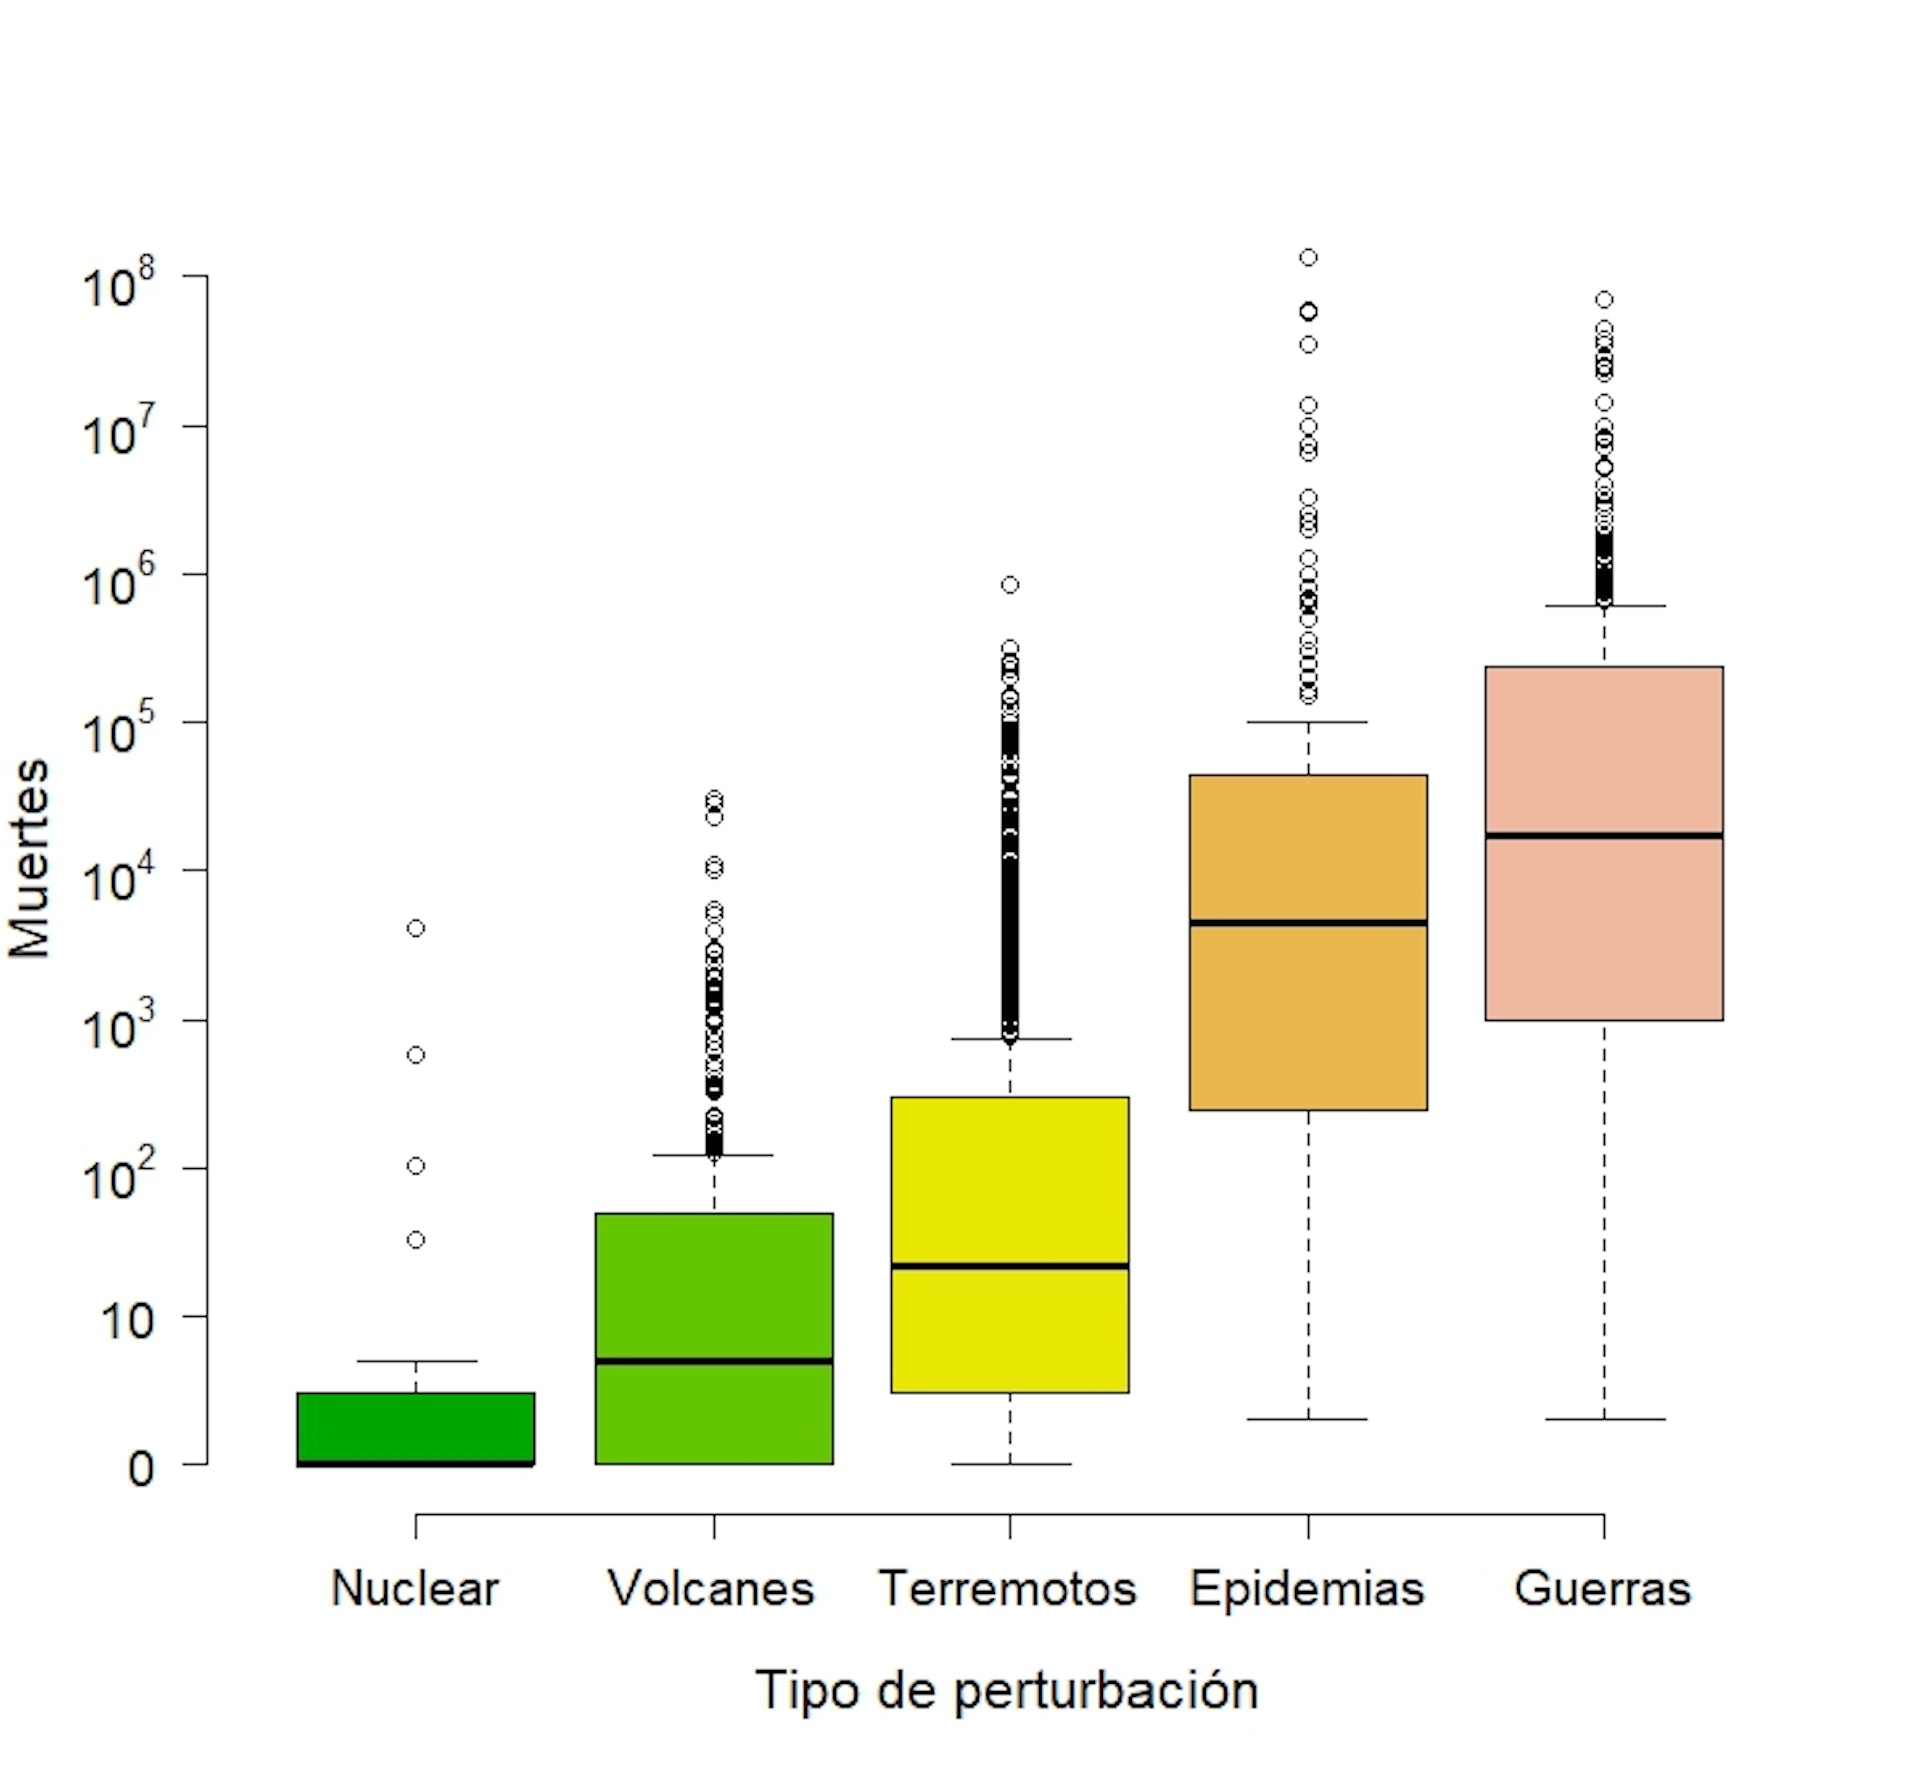  Comparación de la mortalidad producida por las perturbaciones sociales a lo largo de la historia, agrupadas en cinco tipos (accidentes nucleares, volcanes, terremotos, epidemias y guerras). Pausas & Leverkus 2023 